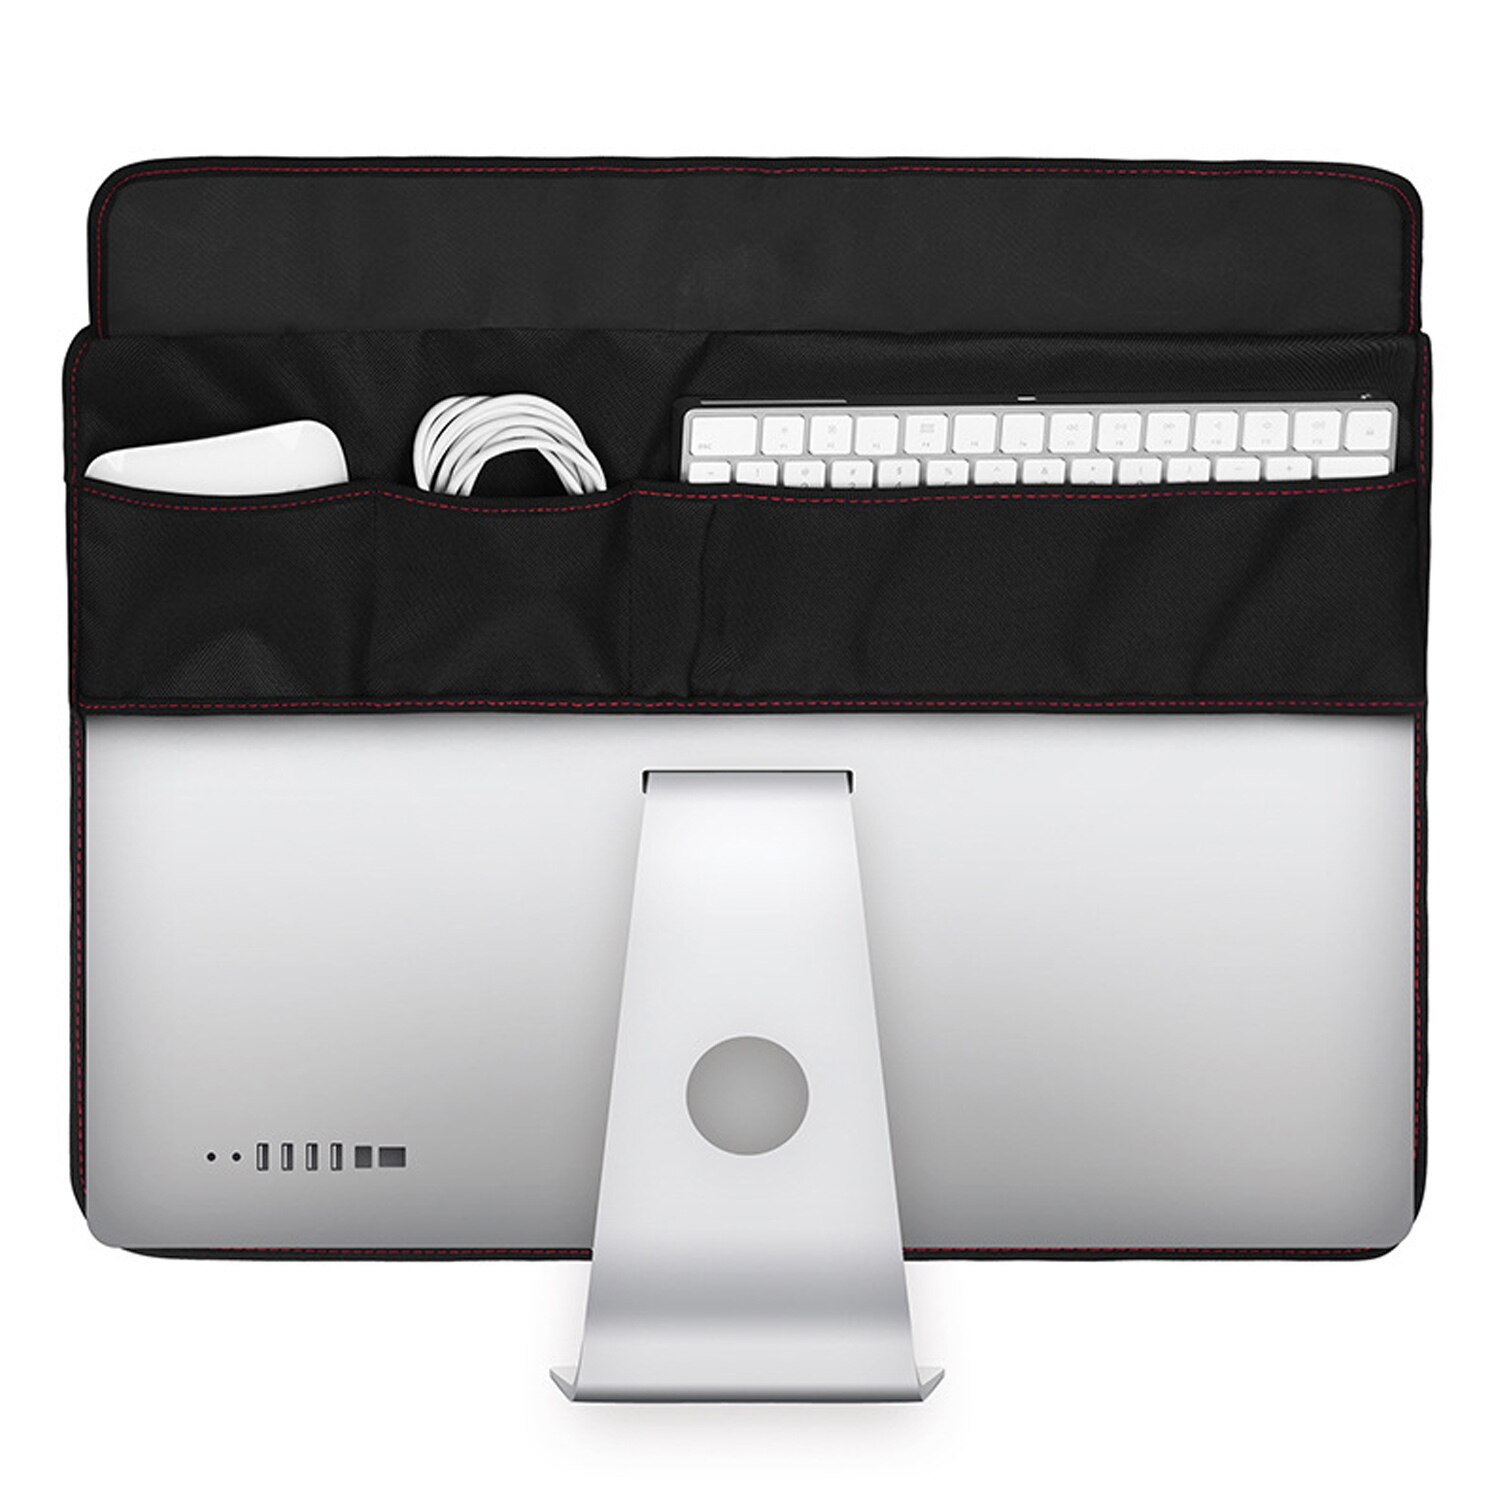 Waterdicht Stofdicht Soft Cover Protector Met Zakken Voor 21Inch Apple Imac Lcd Screen Computer Monitor Stofkap Zwart